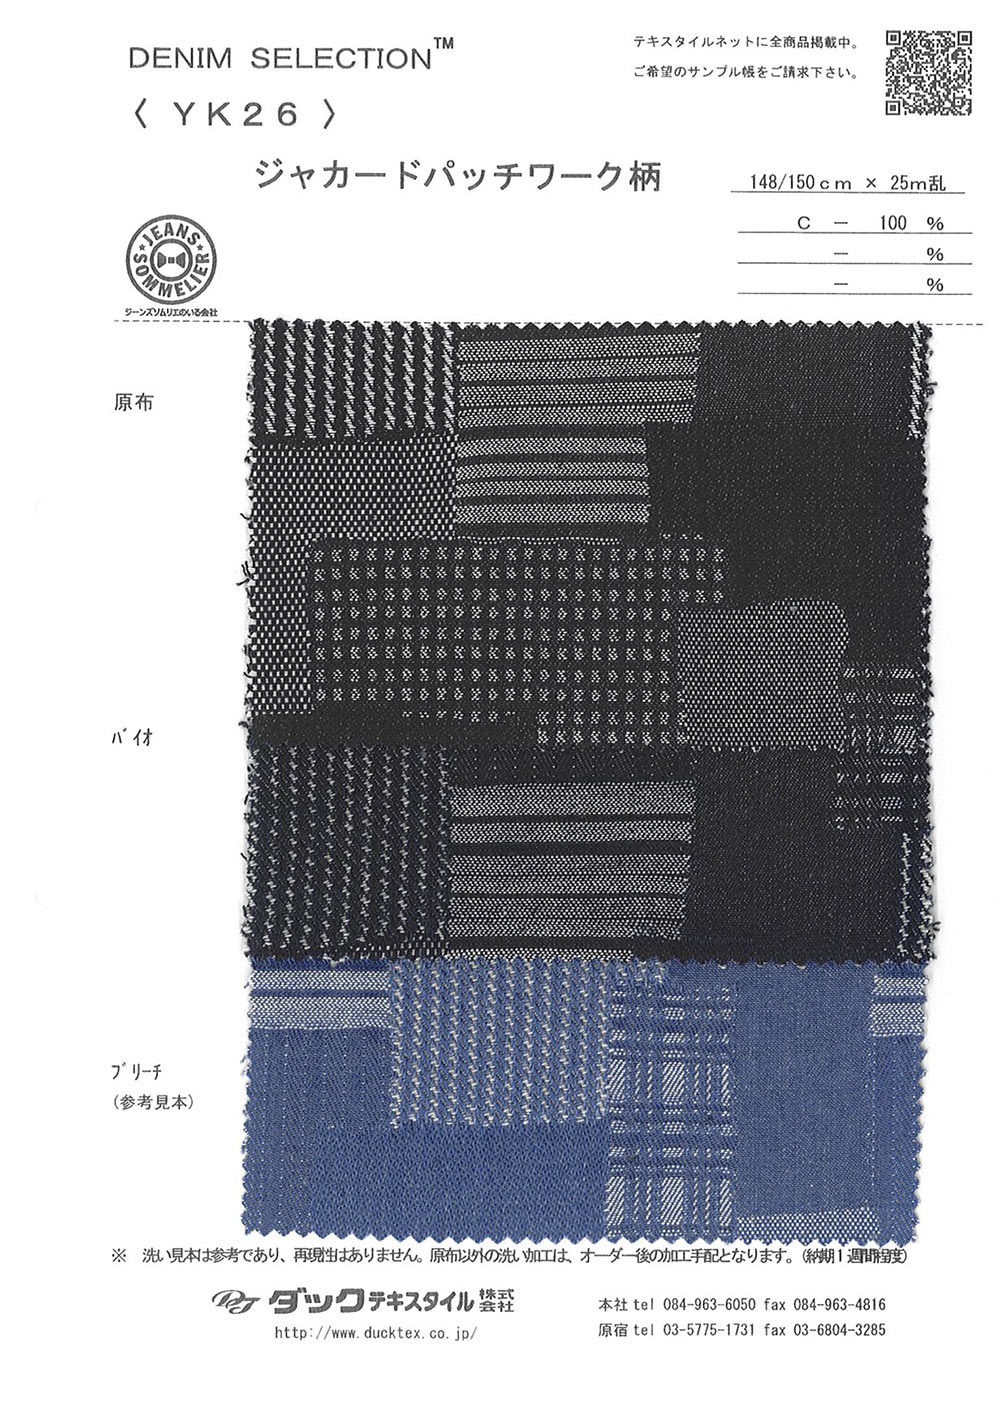 YK26 Diseño Jacquard Patchwork[Fabrica Textil] DUCK TEXTILE